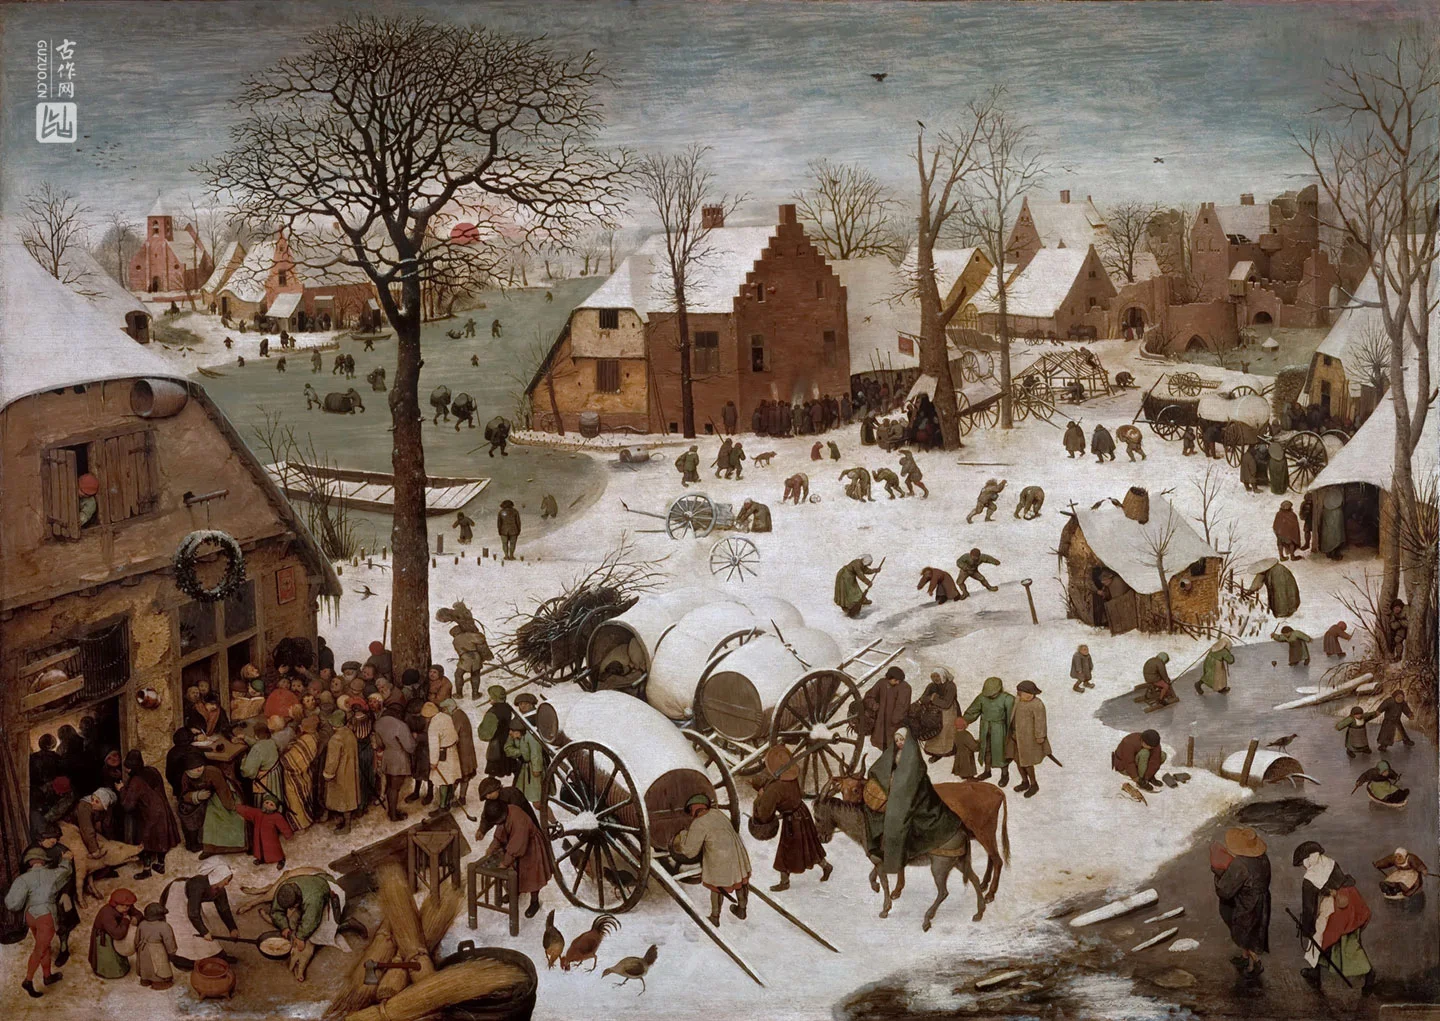 彼得·勃鲁盖尔油画作品《伯利恒人口普查》